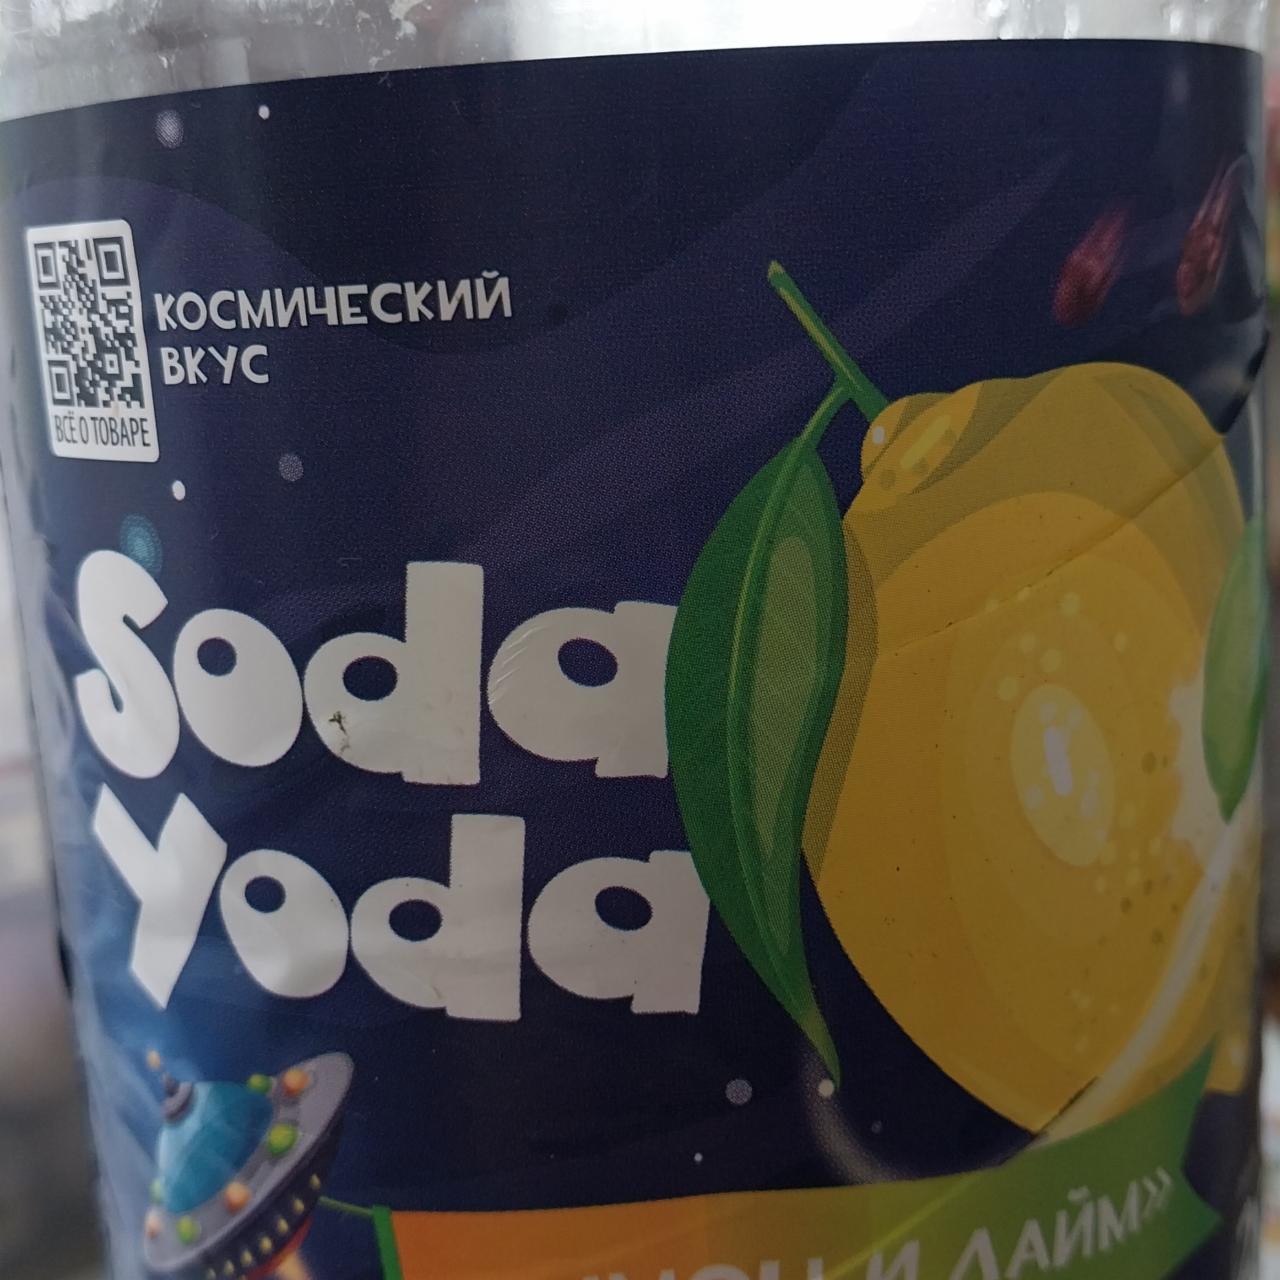 Фото - газированный напиток лимон и лайм Soda yoda